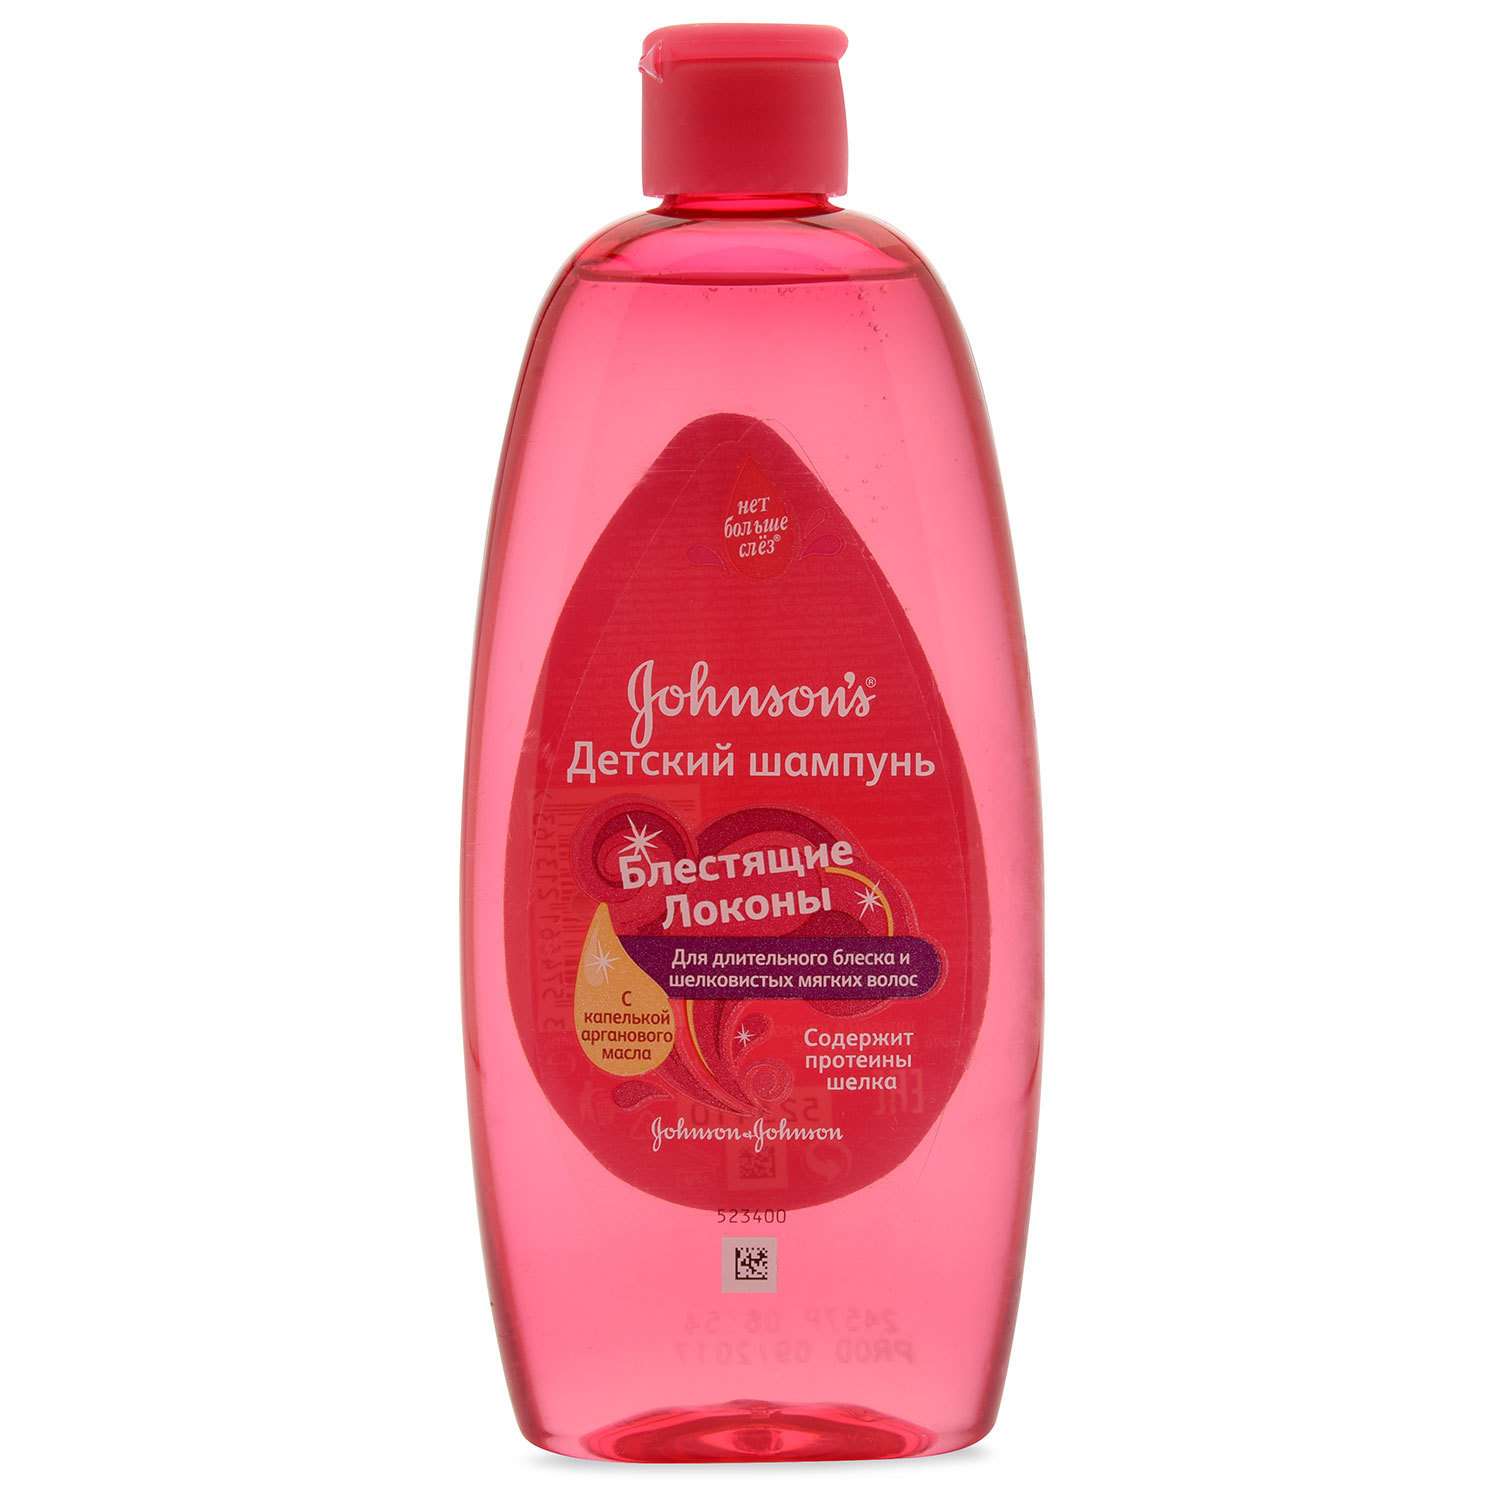 Набор подарочный Johnson's Блестящие локоны шампунь для волос 300мл+спрей-кондиционер для волос 200мл - фото 2